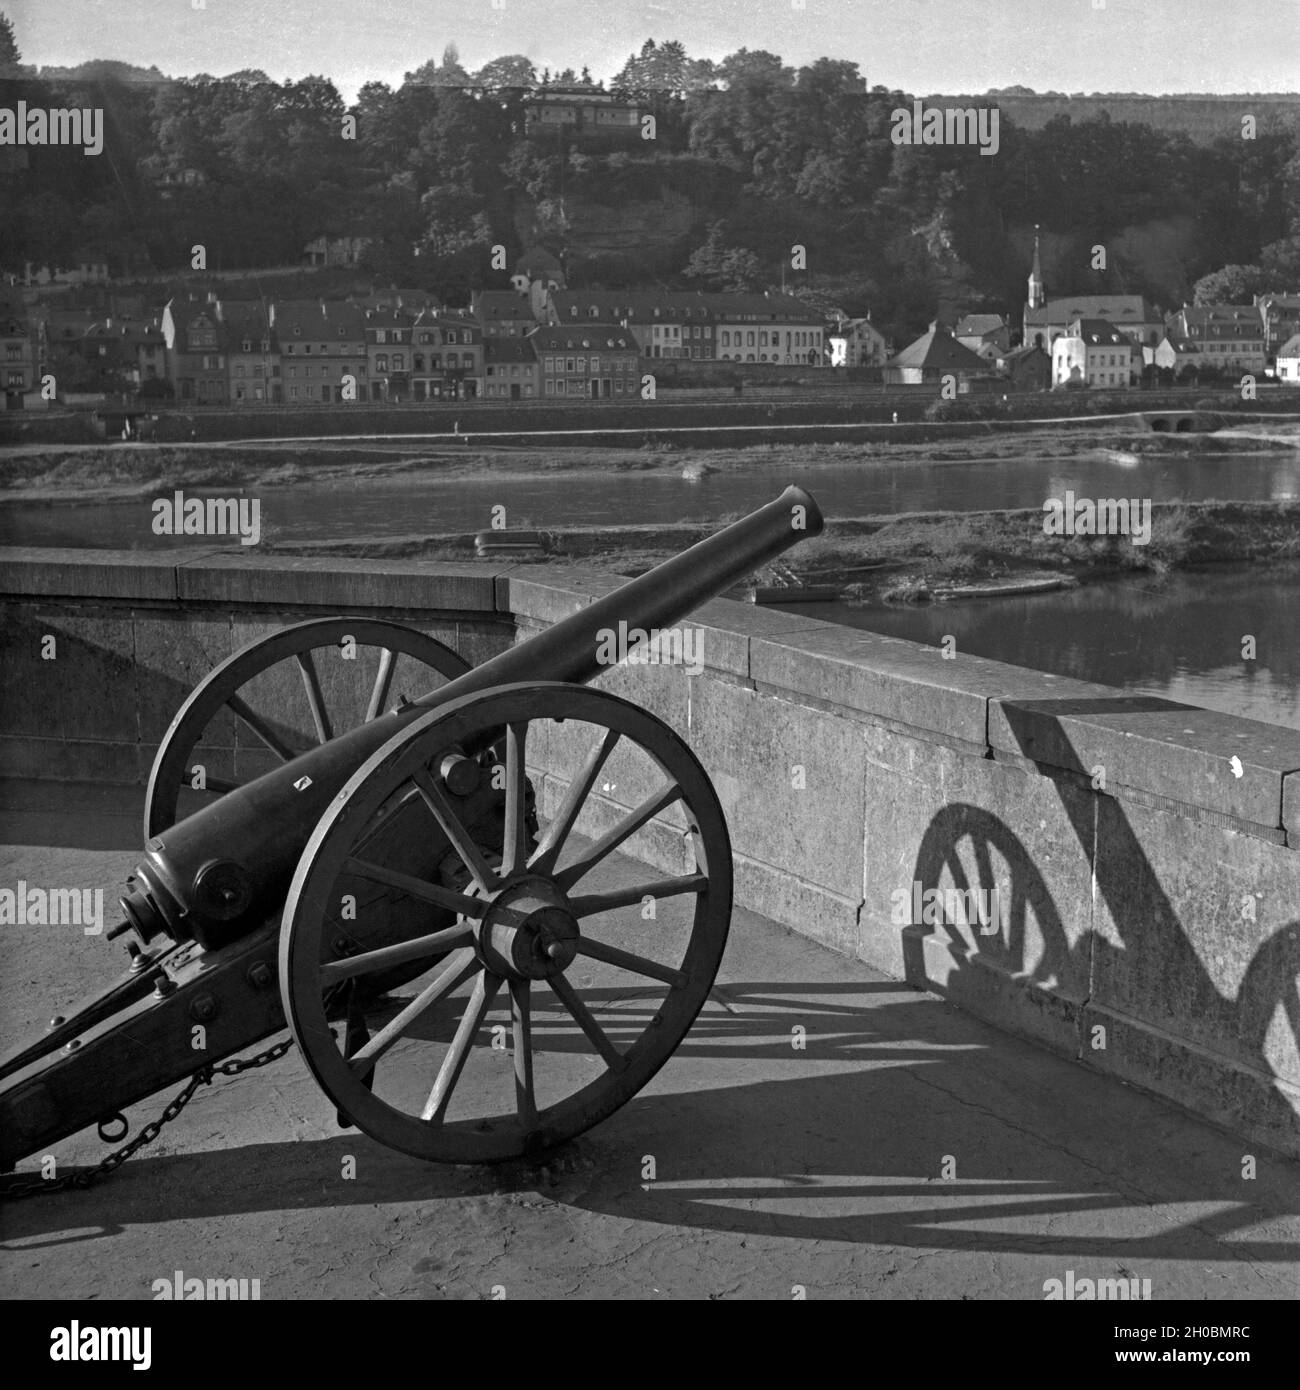 Historische Kanone in Feyen Weismark, einem Stadtteil im Süden von Trier, Deutschland 1930er Jahre. Historical cannon at Feyen Weismark, a suburb in the south of Trier, Germany 1930s. Stock Photo